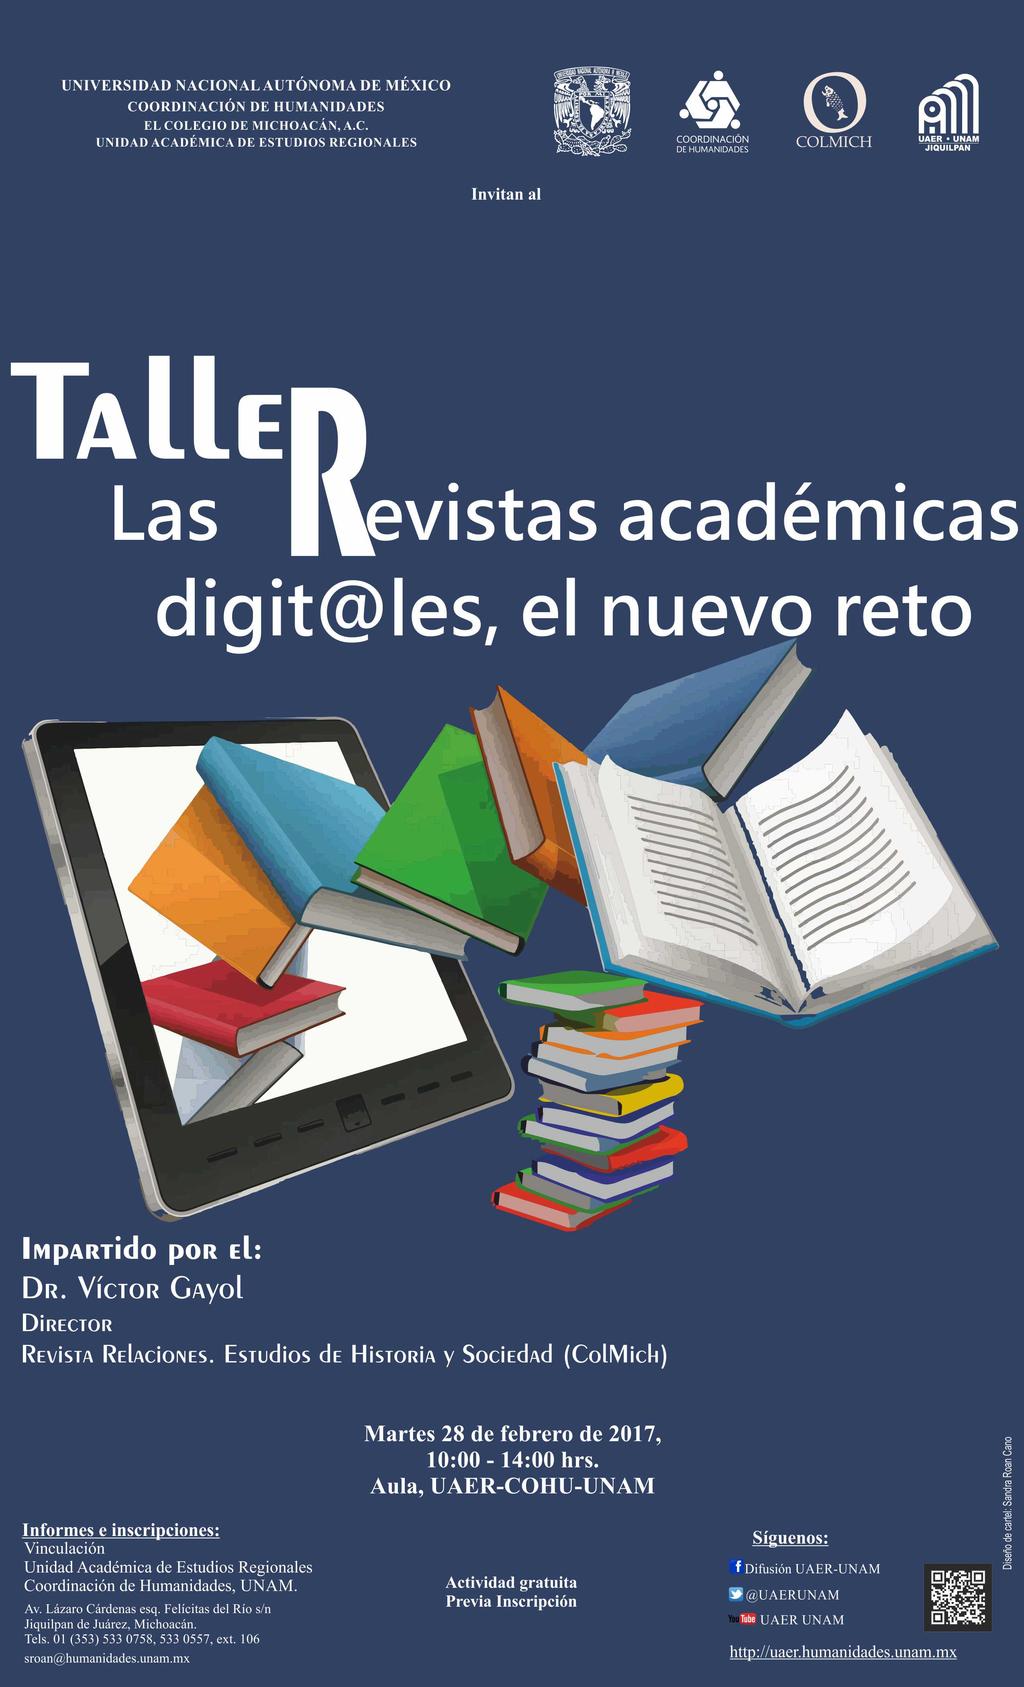 invitan al Taller: Las revistas académicas digitales, el nuevo reto Impartido por: Dr. Víctor Gayol Director: Revista relaciones.